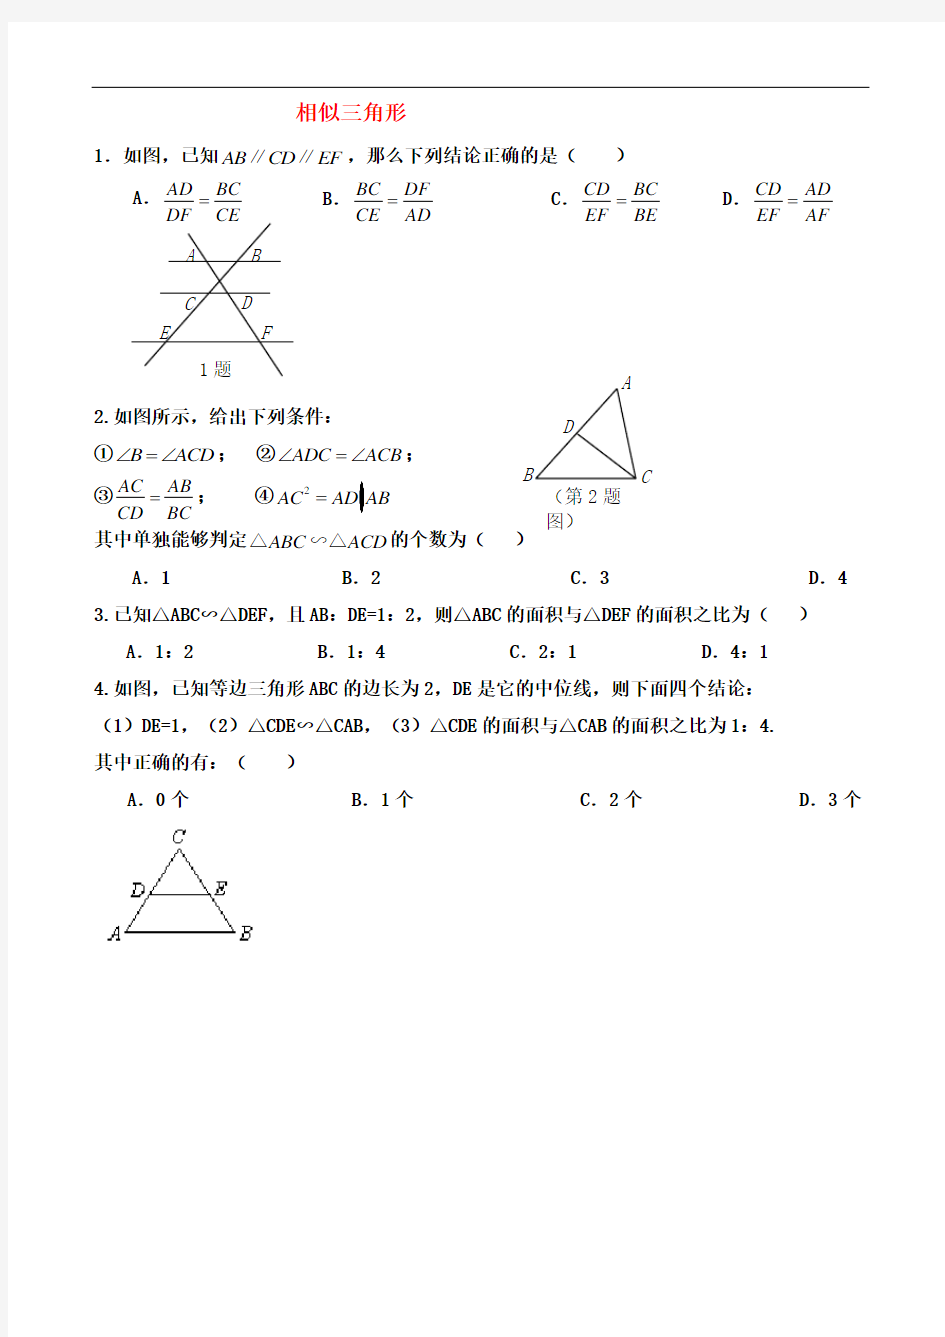 相似三角形中考题题型类